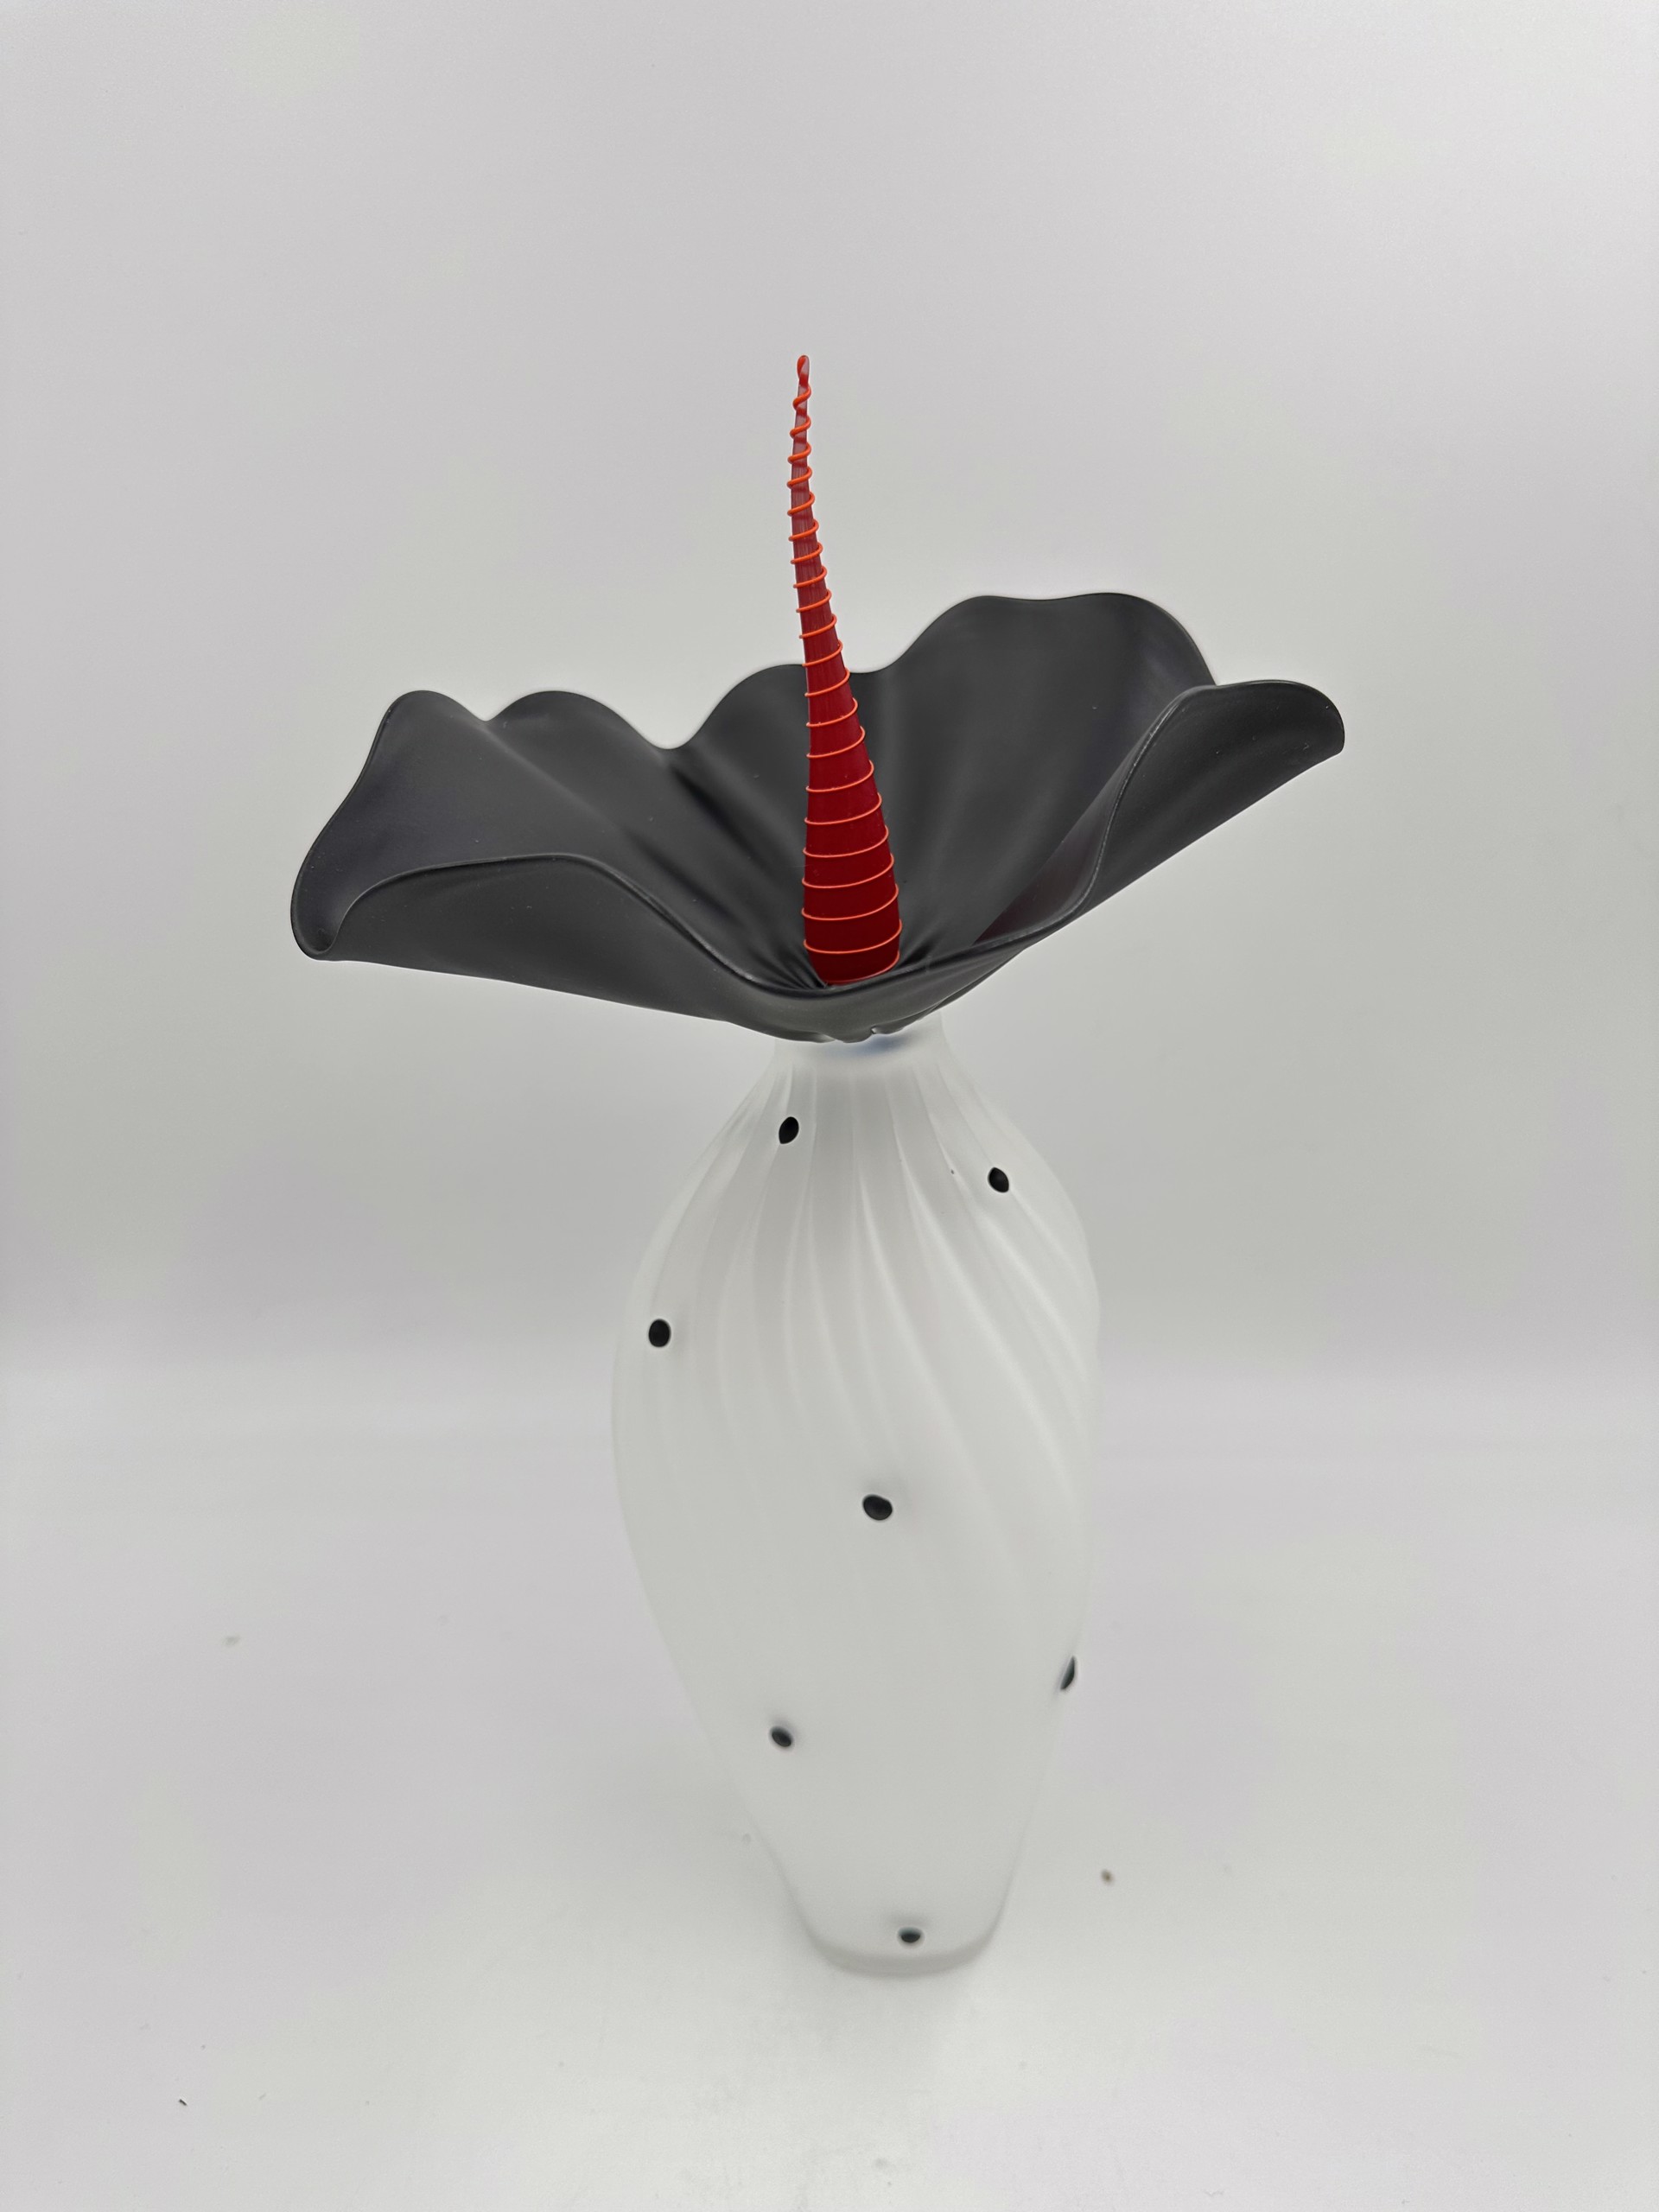 Bobtanical Tall - White/Black & Red by Kliszewski Glass